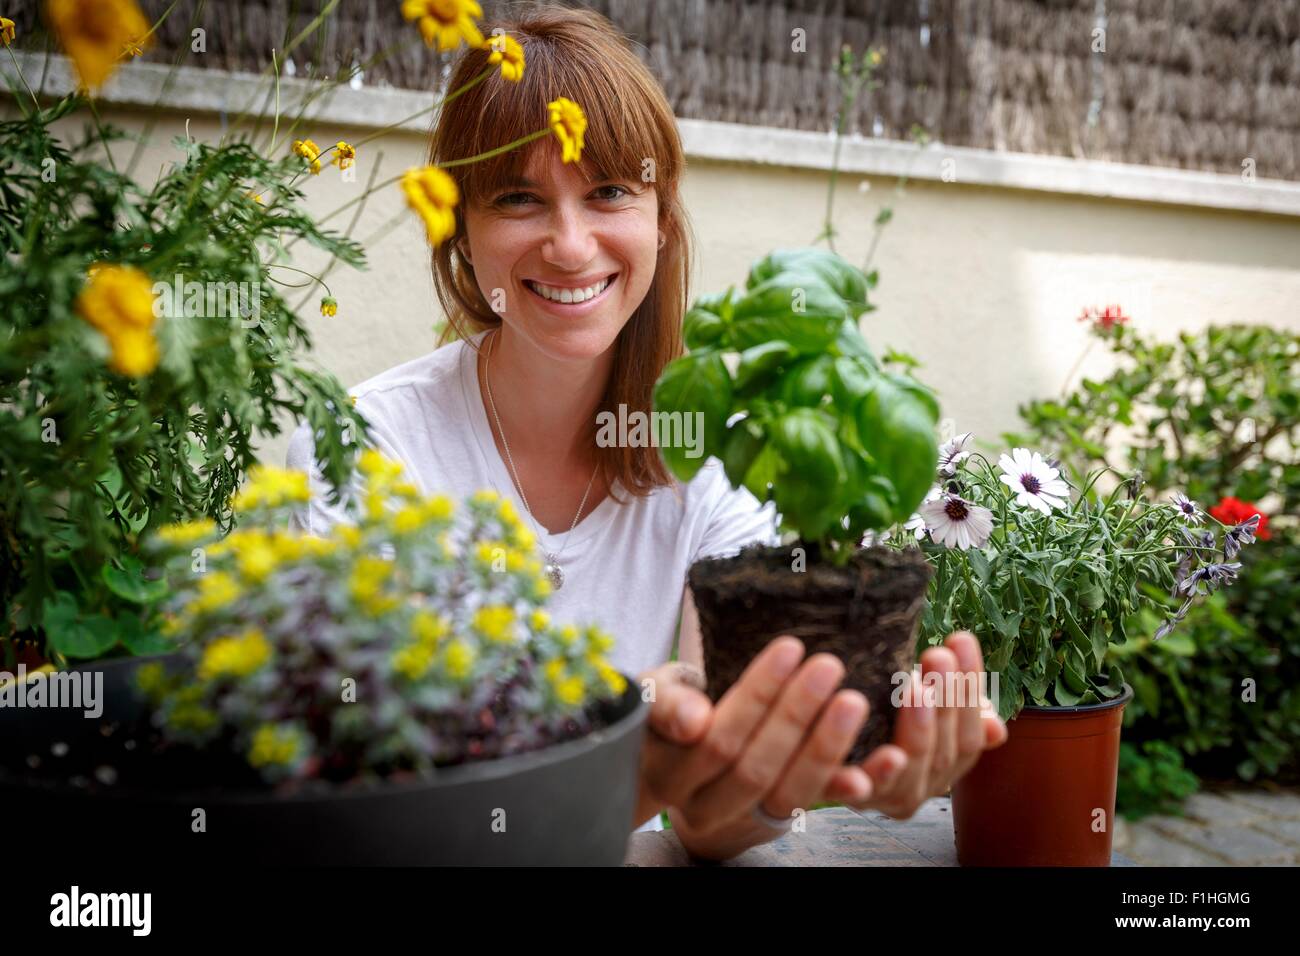 Mid adult woman holding plant de basilic au creux des mains, smiling at camera Banque D'Images